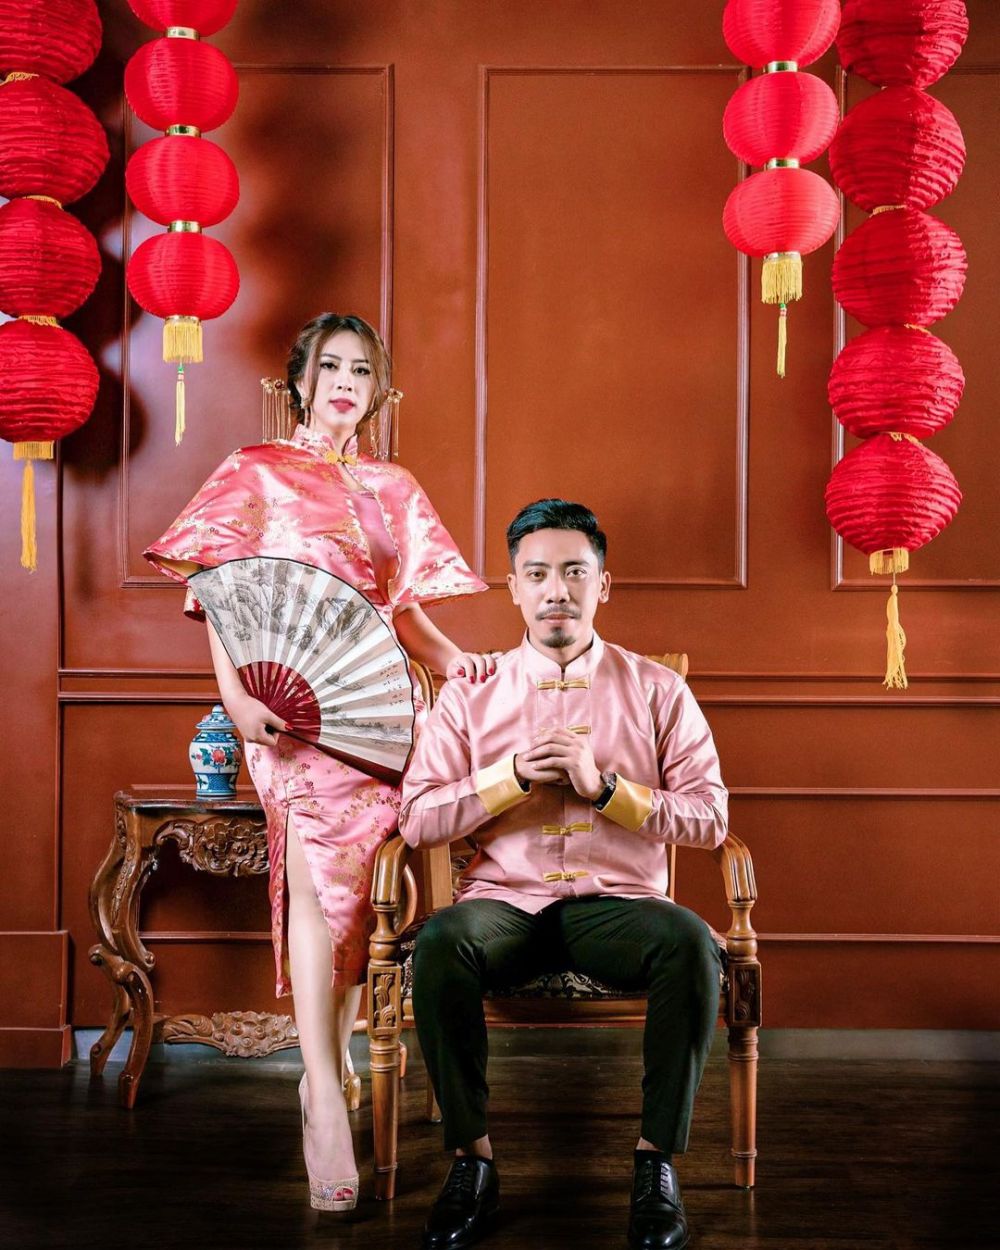 Potret 6 crazy rich Indonesia bareng pasangan, setia temani dari nol